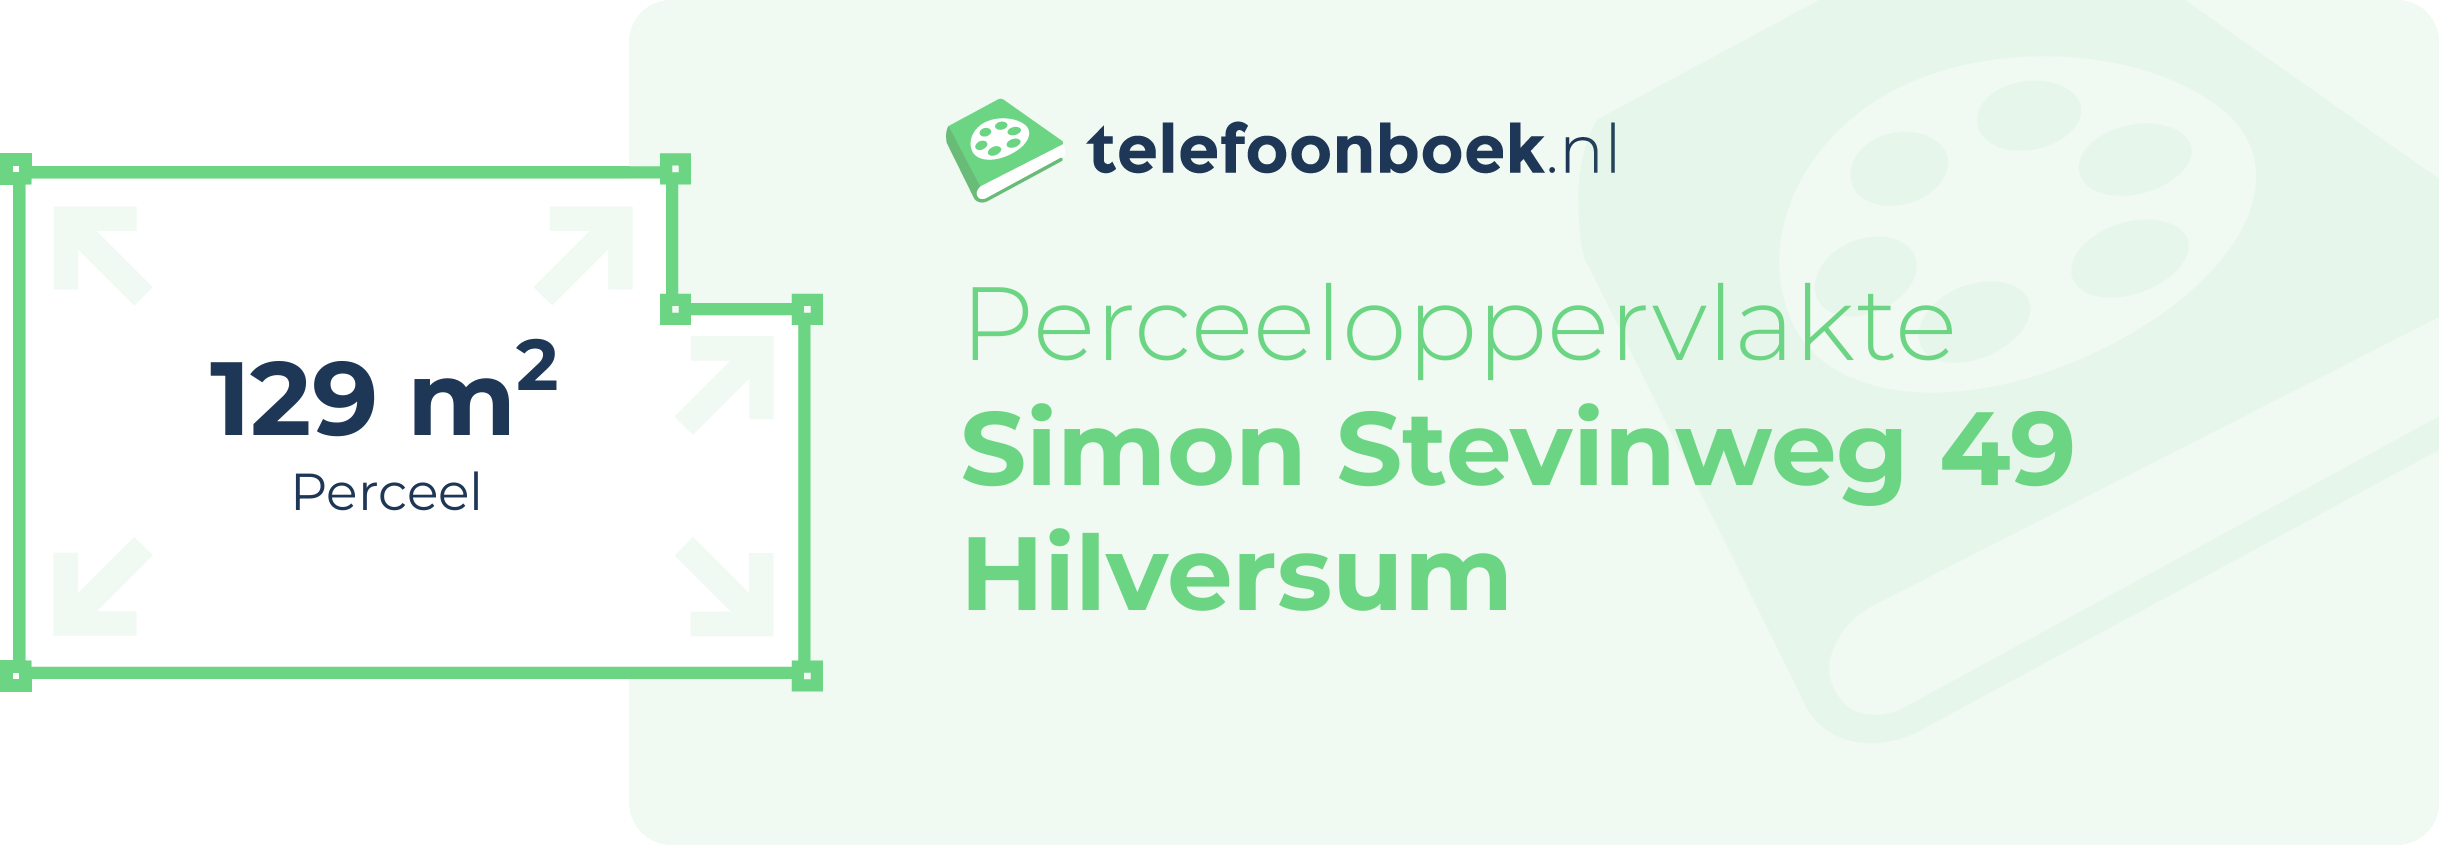 Perceeloppervlakte Simon Stevinweg 49 Hilversum